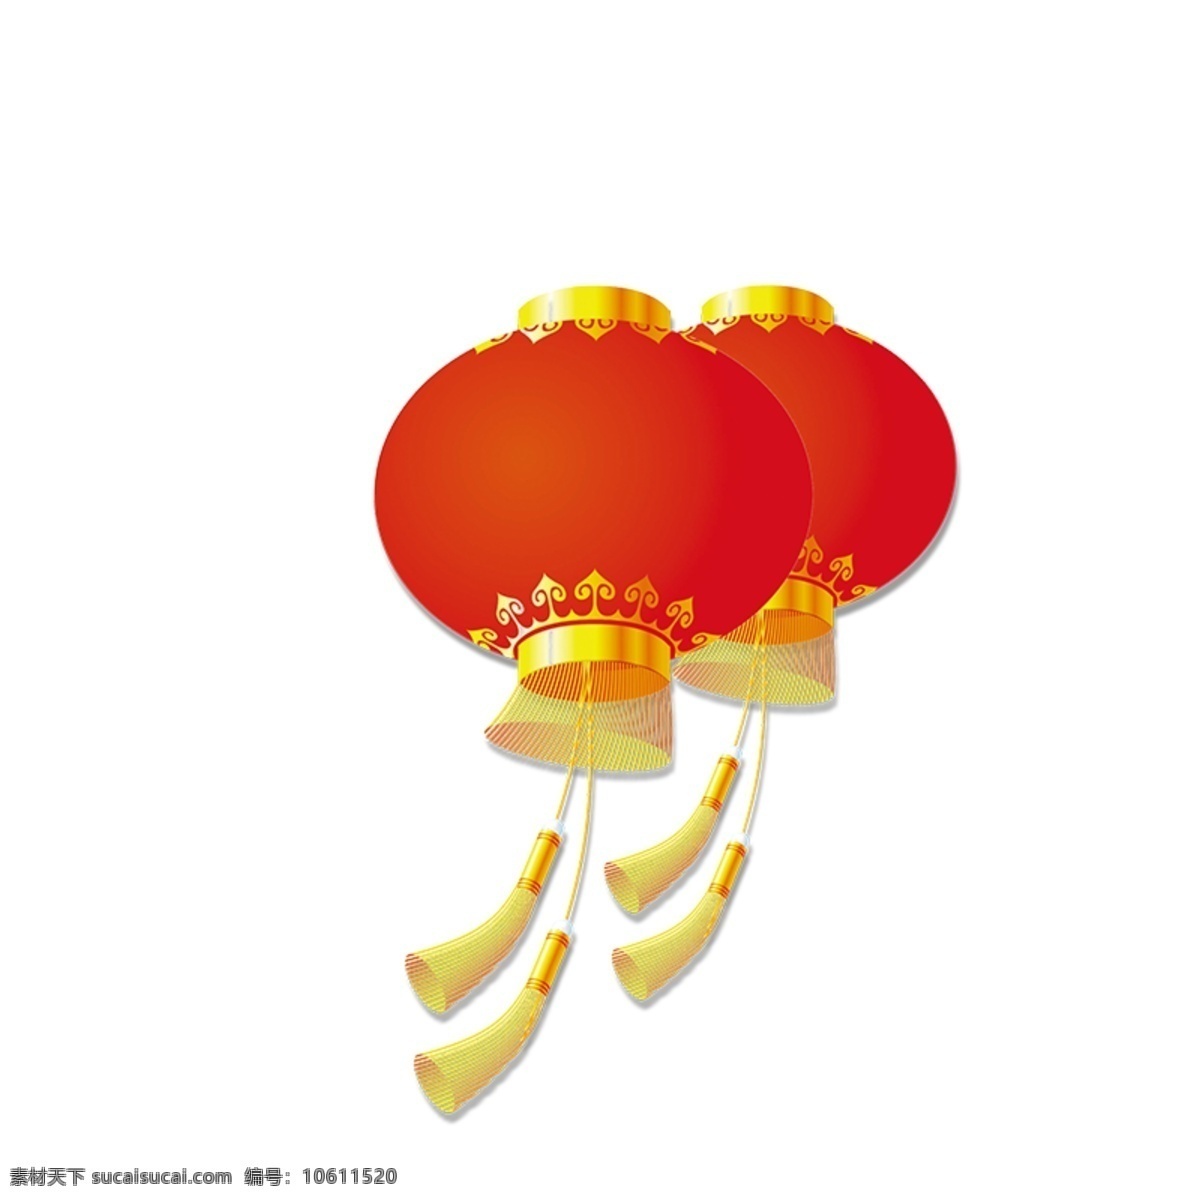 灯笼图片 热气球 气球 小气球 彩色气球 漂浮元素 c4d 漂浮 元素 春节灯笼 中秋节 中秋节灯笼 素材图